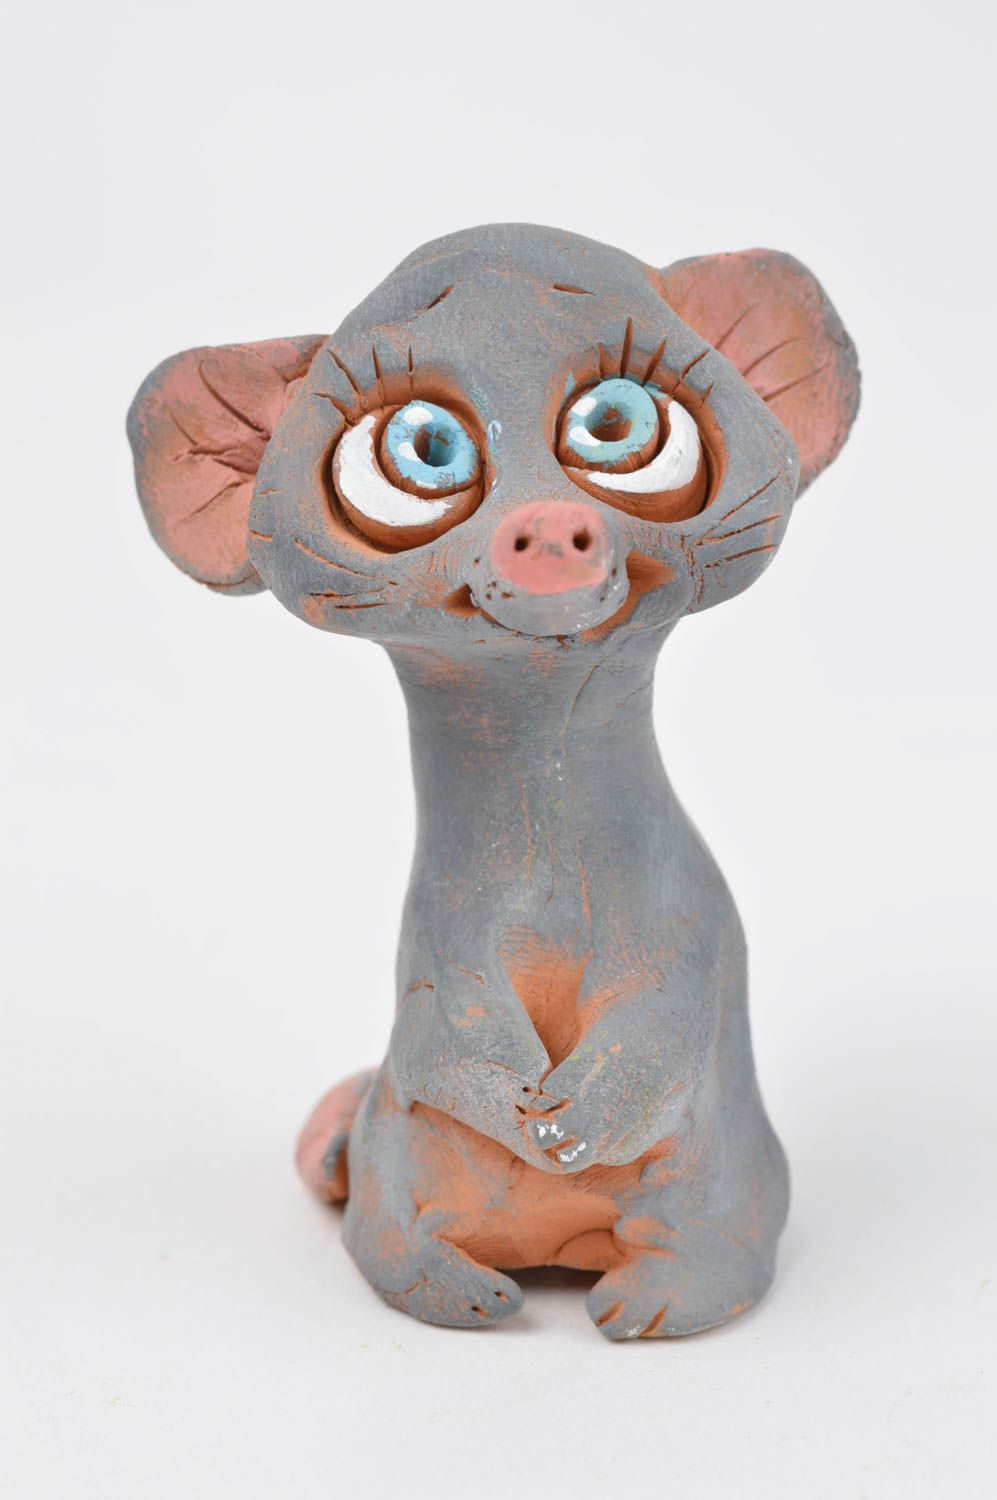 Статуэтка животного мышки ручной работы статуэтка для декора фигурка из глины фото 2